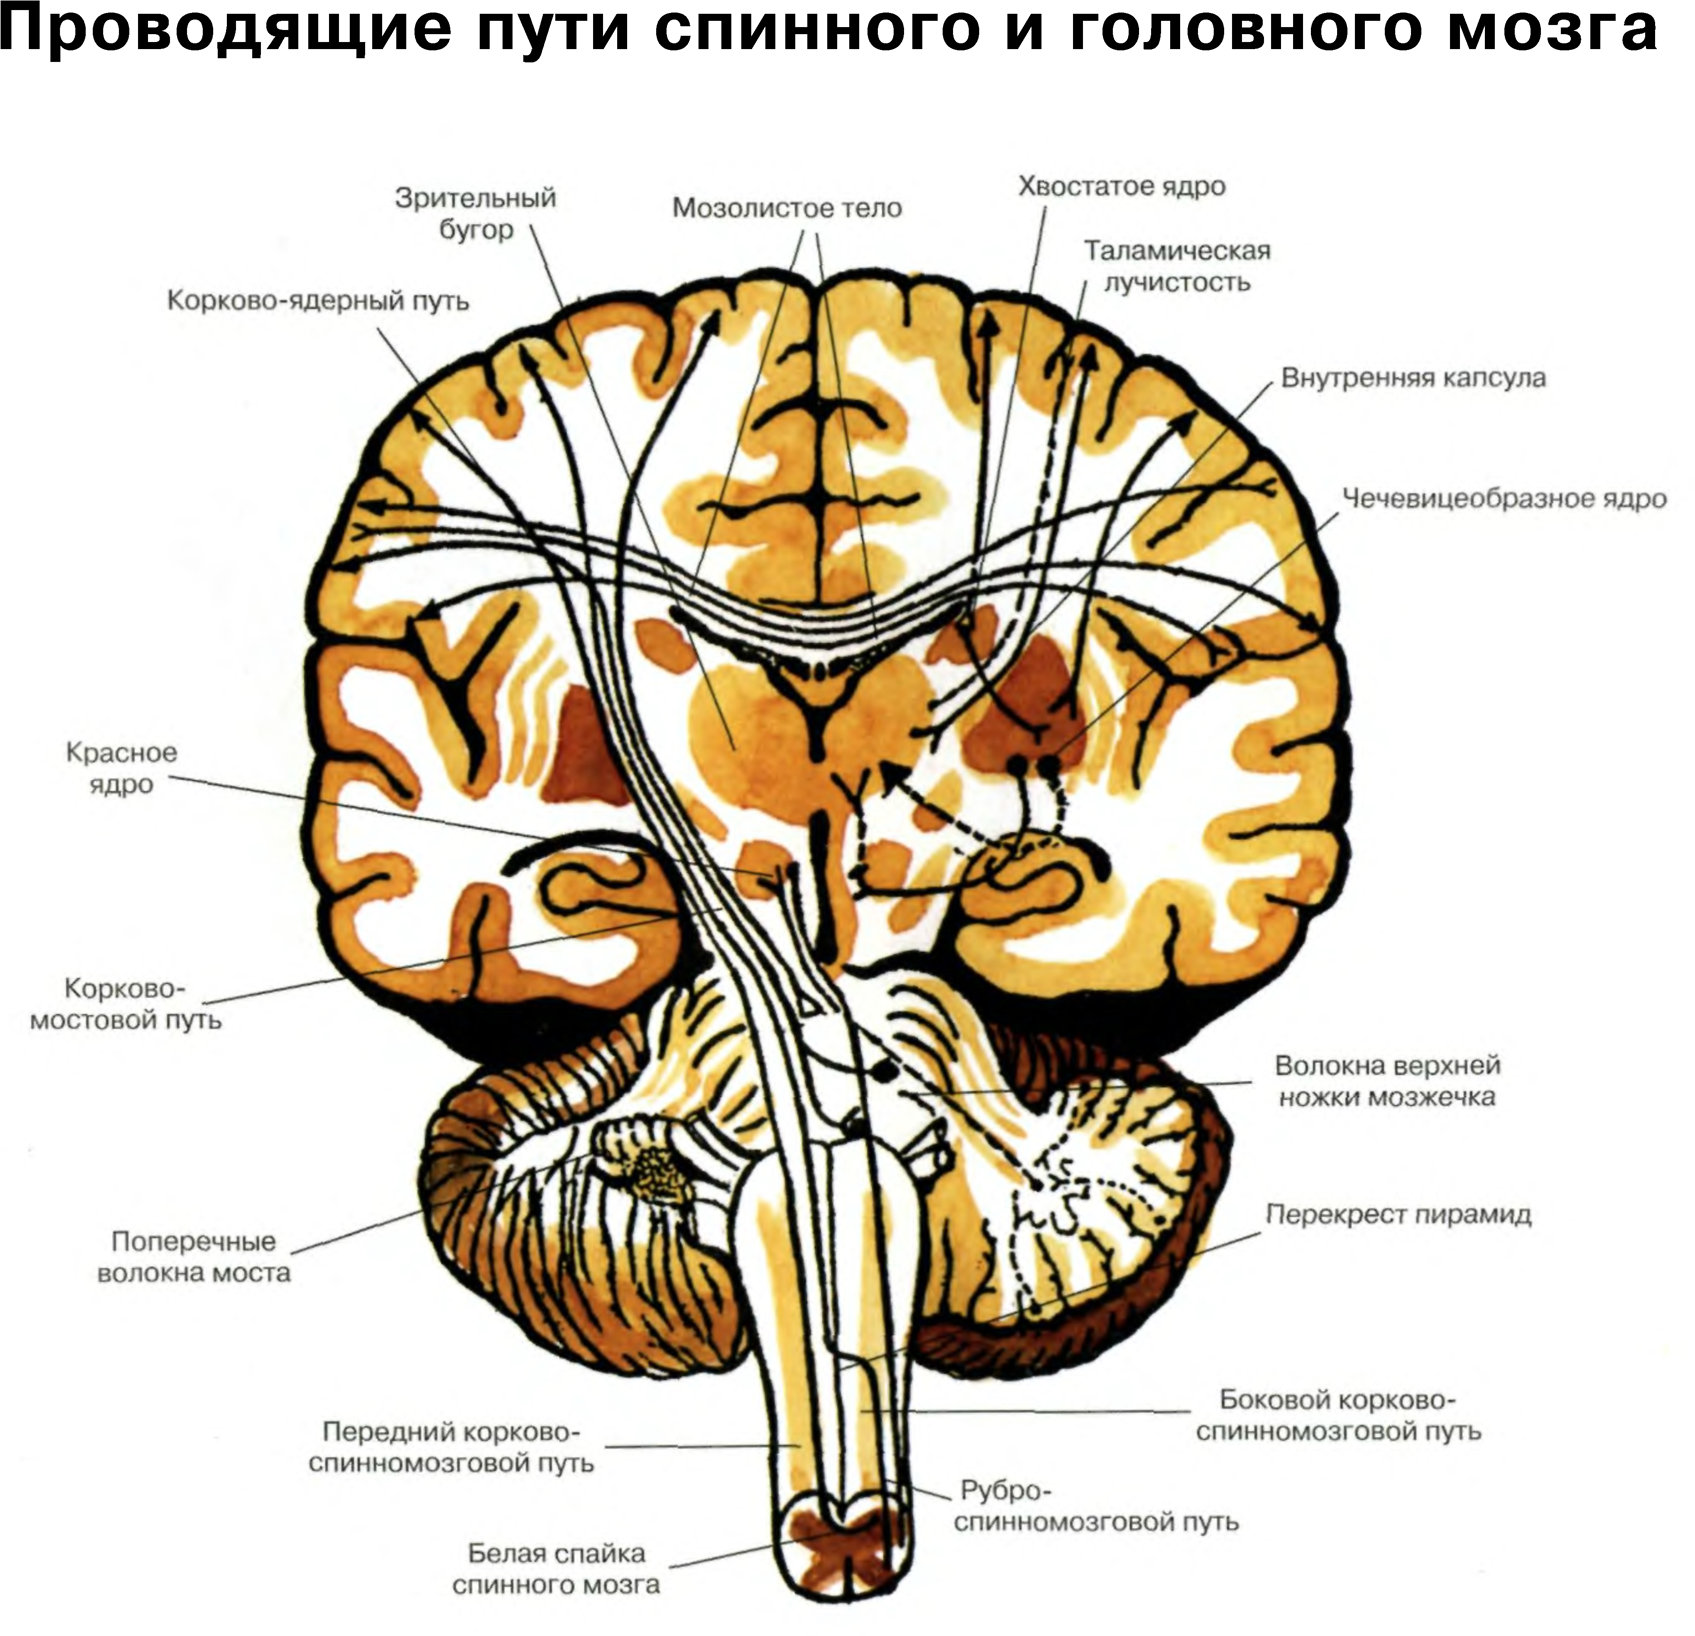 Нисходящий нервный путь. Проводящие пути головного мозга восходящие и нисходящие. Чувствительные проводящие пути спинного и головного мозга анатомия. Схему восходящих путей спинного и головного мозга.. Проводящие пути спинной мозг анатомия строение.